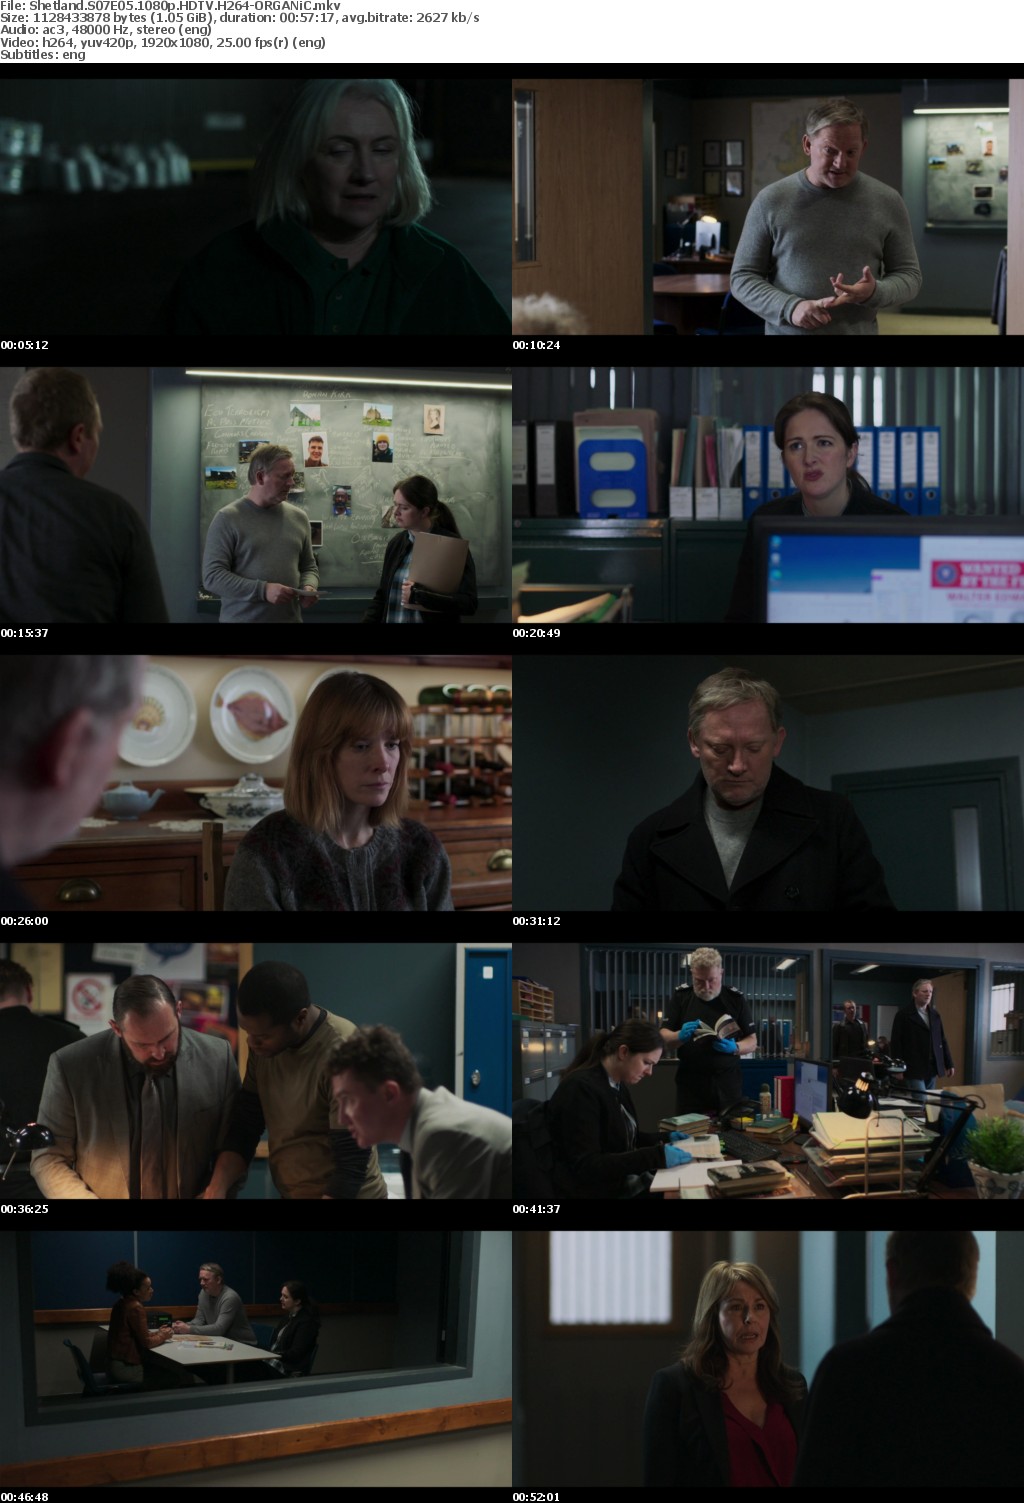 Shetland S07E05 1080p HDTV H264-ORGANiC